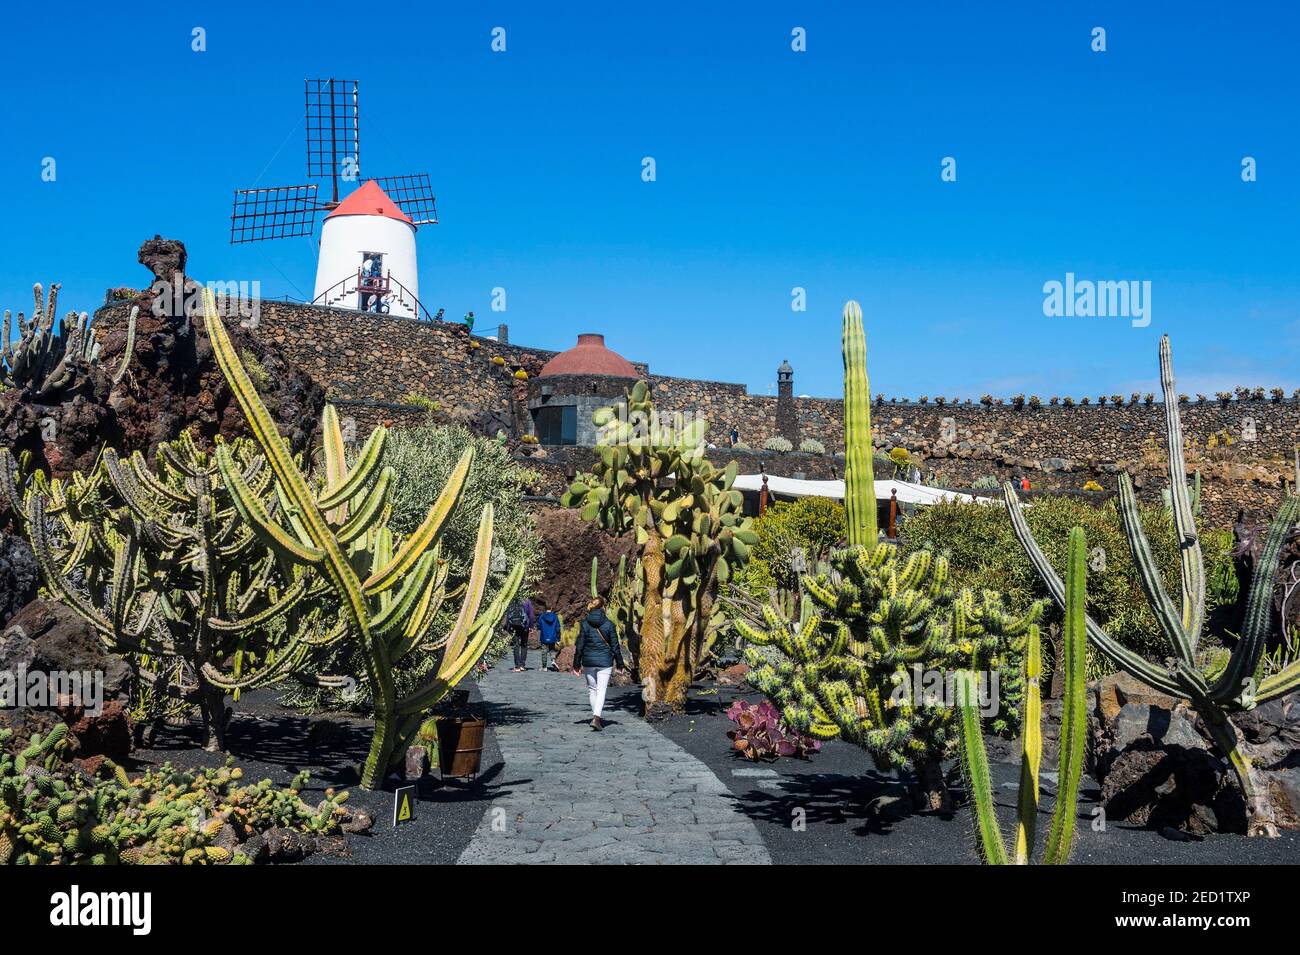 Jardin de Cactus, jardín de cactus Cesar Manrique, Lanzarote, Islas Canarias Foto de stock